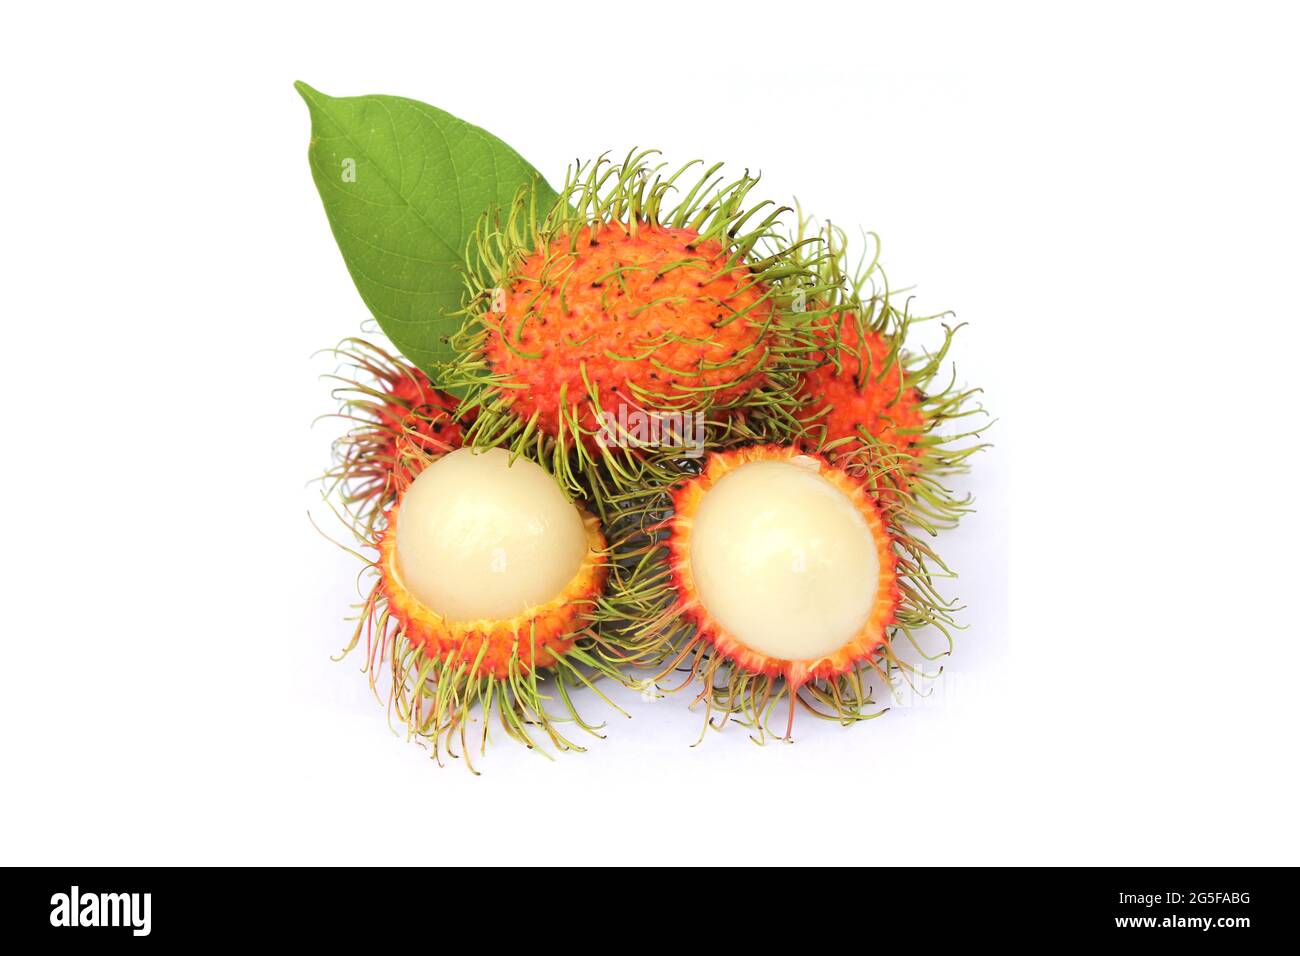 Le ramboutan doux, le fruit populaire de la Thaïlande se déchècher de l'écorce pour révéler l'intérieur. Isolé d'un fond blanc avec des feuilles vertes Banque D'Images